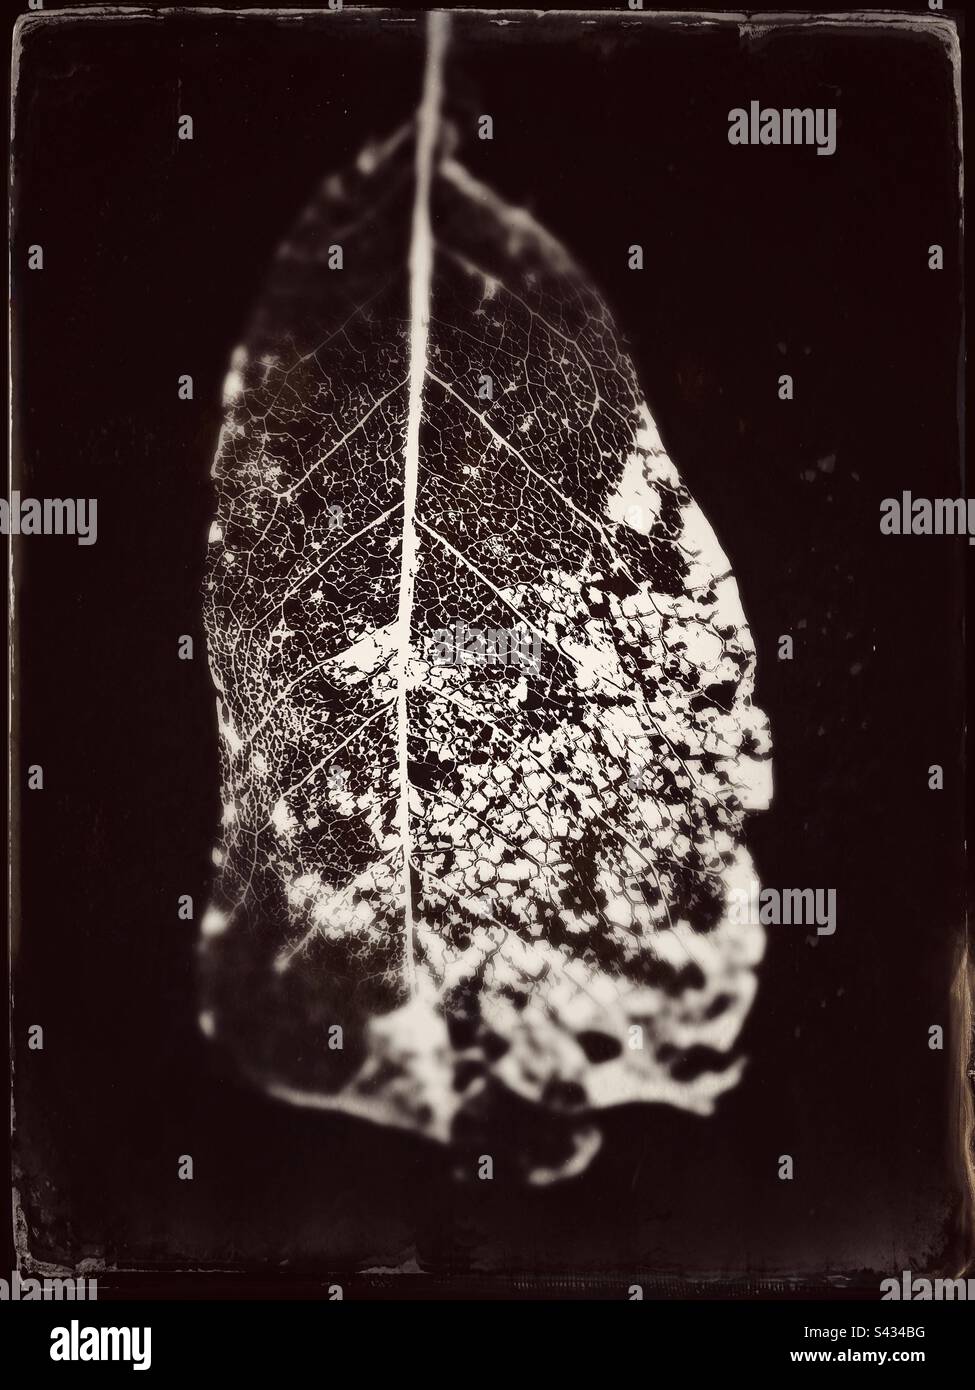 Immagine retroilluminata di una foglia di scheletro. Immagine modificata per dare un aspetto fotografico vintage tintype Foto Stock